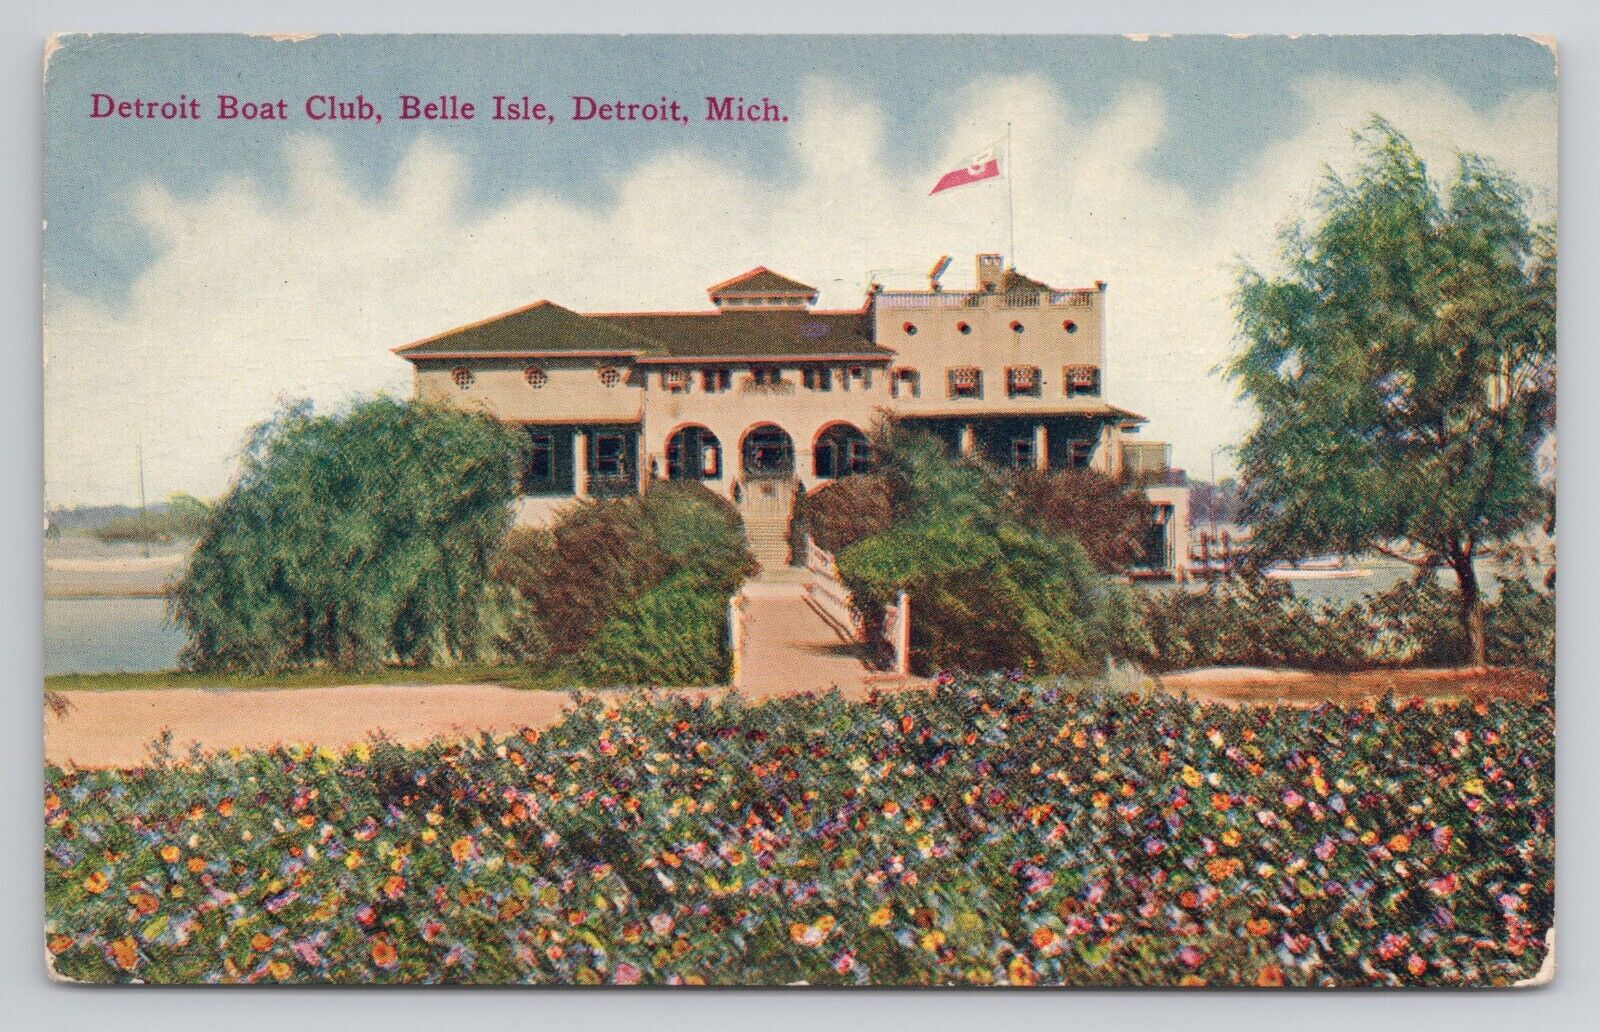 Detroit Boat Club Belle Isle Detroit Michigan c1910 Antique Postcard